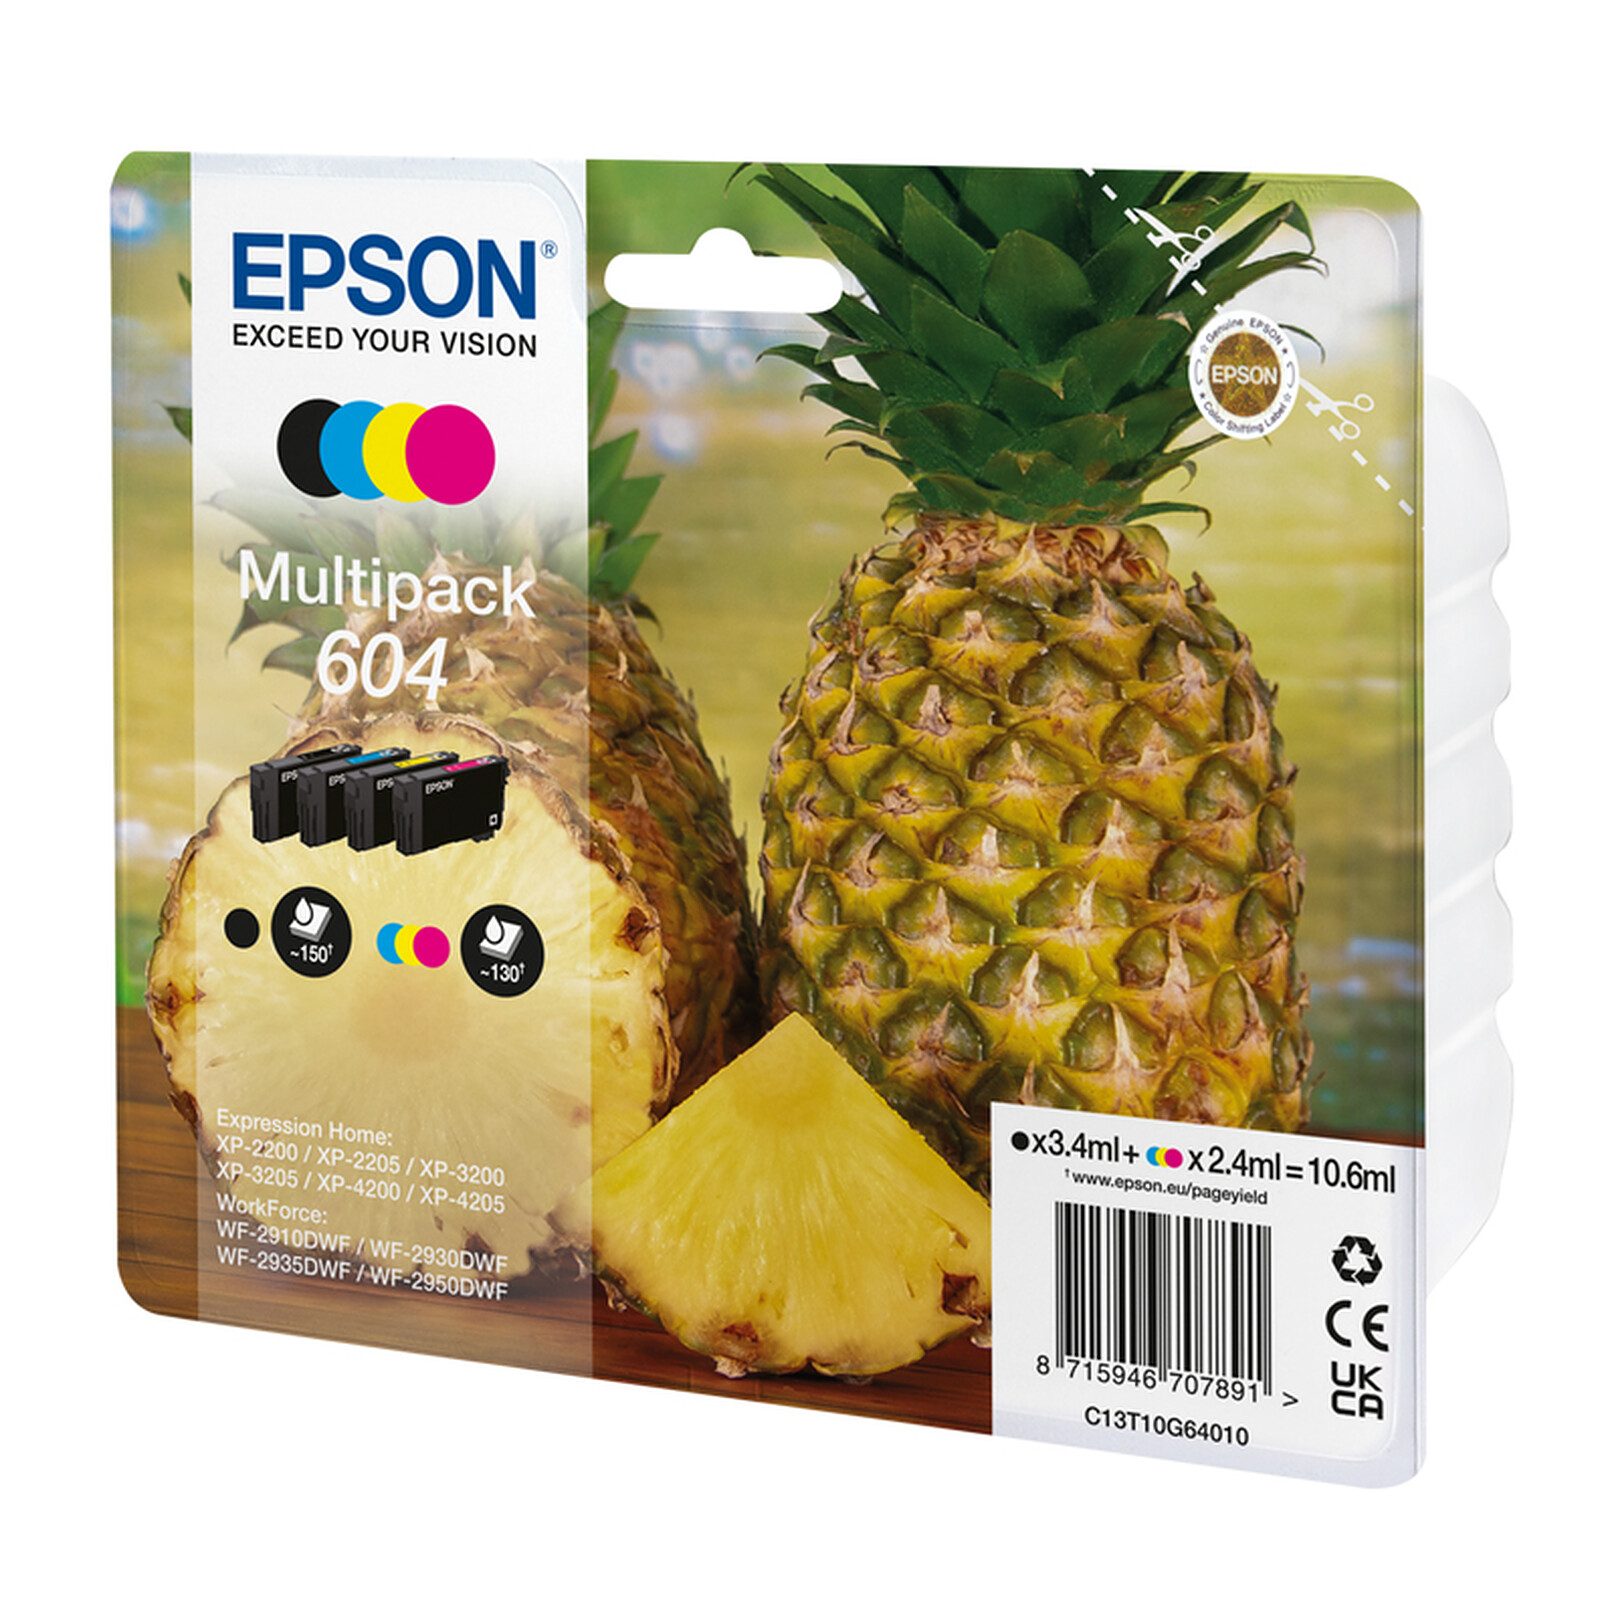 Epson Ananas Multipack 604 - Cartouche imprimante - LDLC